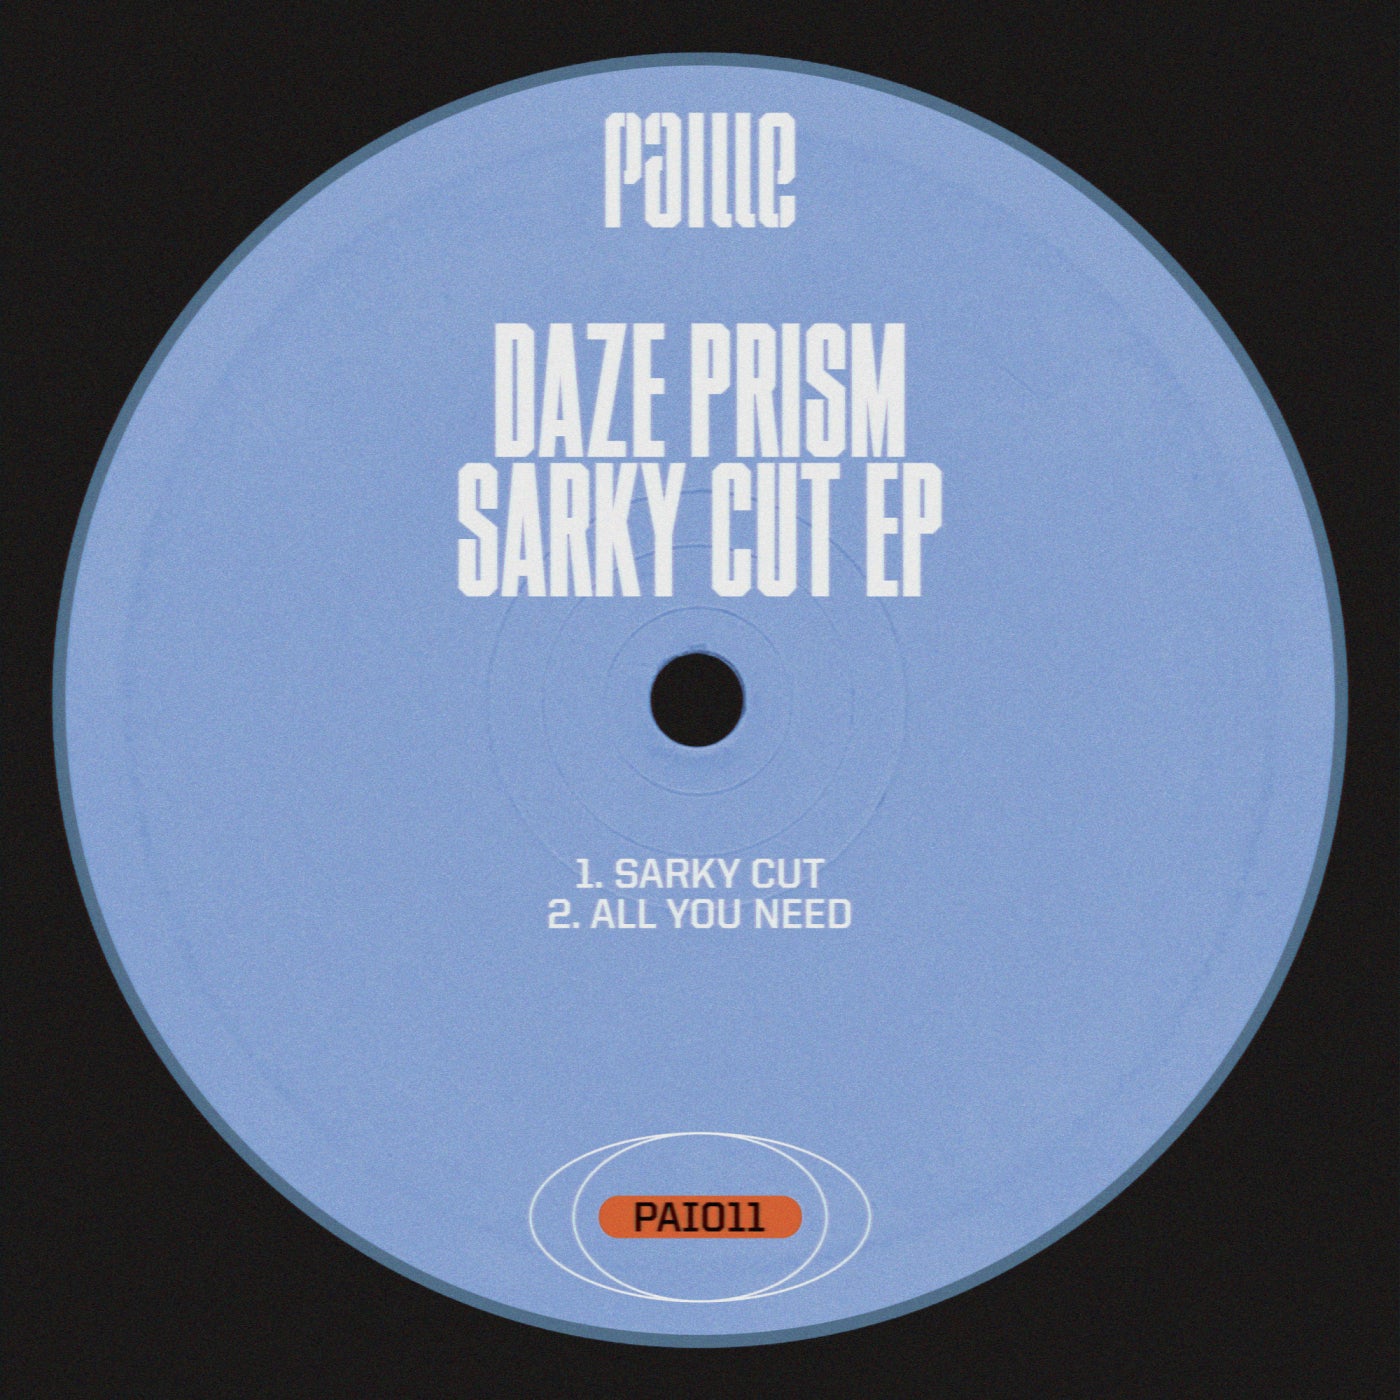 Sarky Cut EP